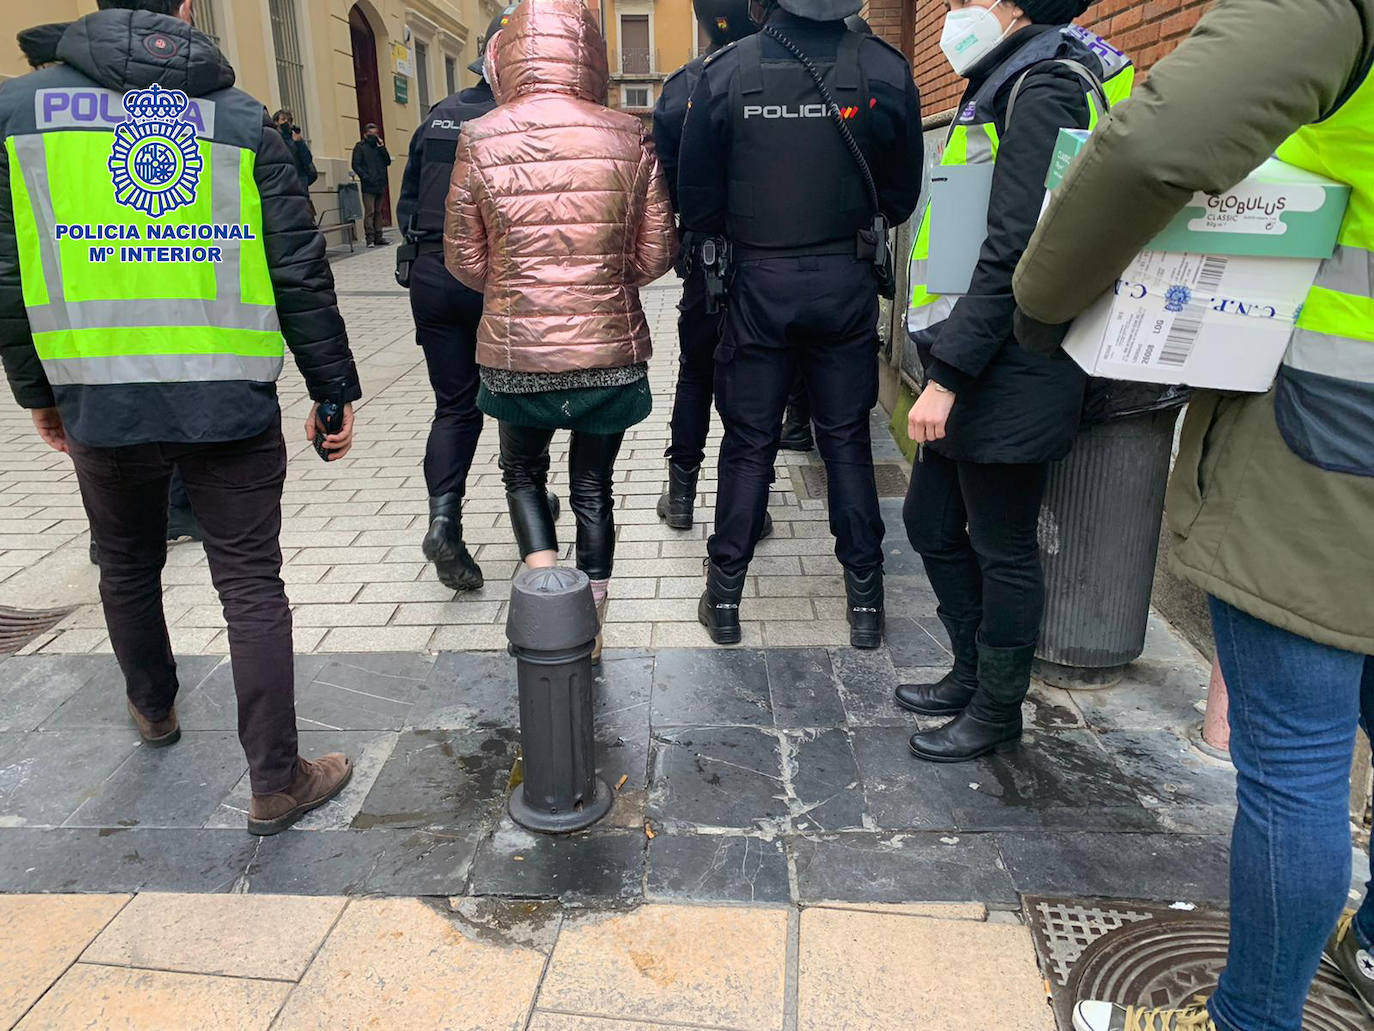 Imagen principal - La detenida por siete atracos en Logroño a punta de navaja ingresa en prisión